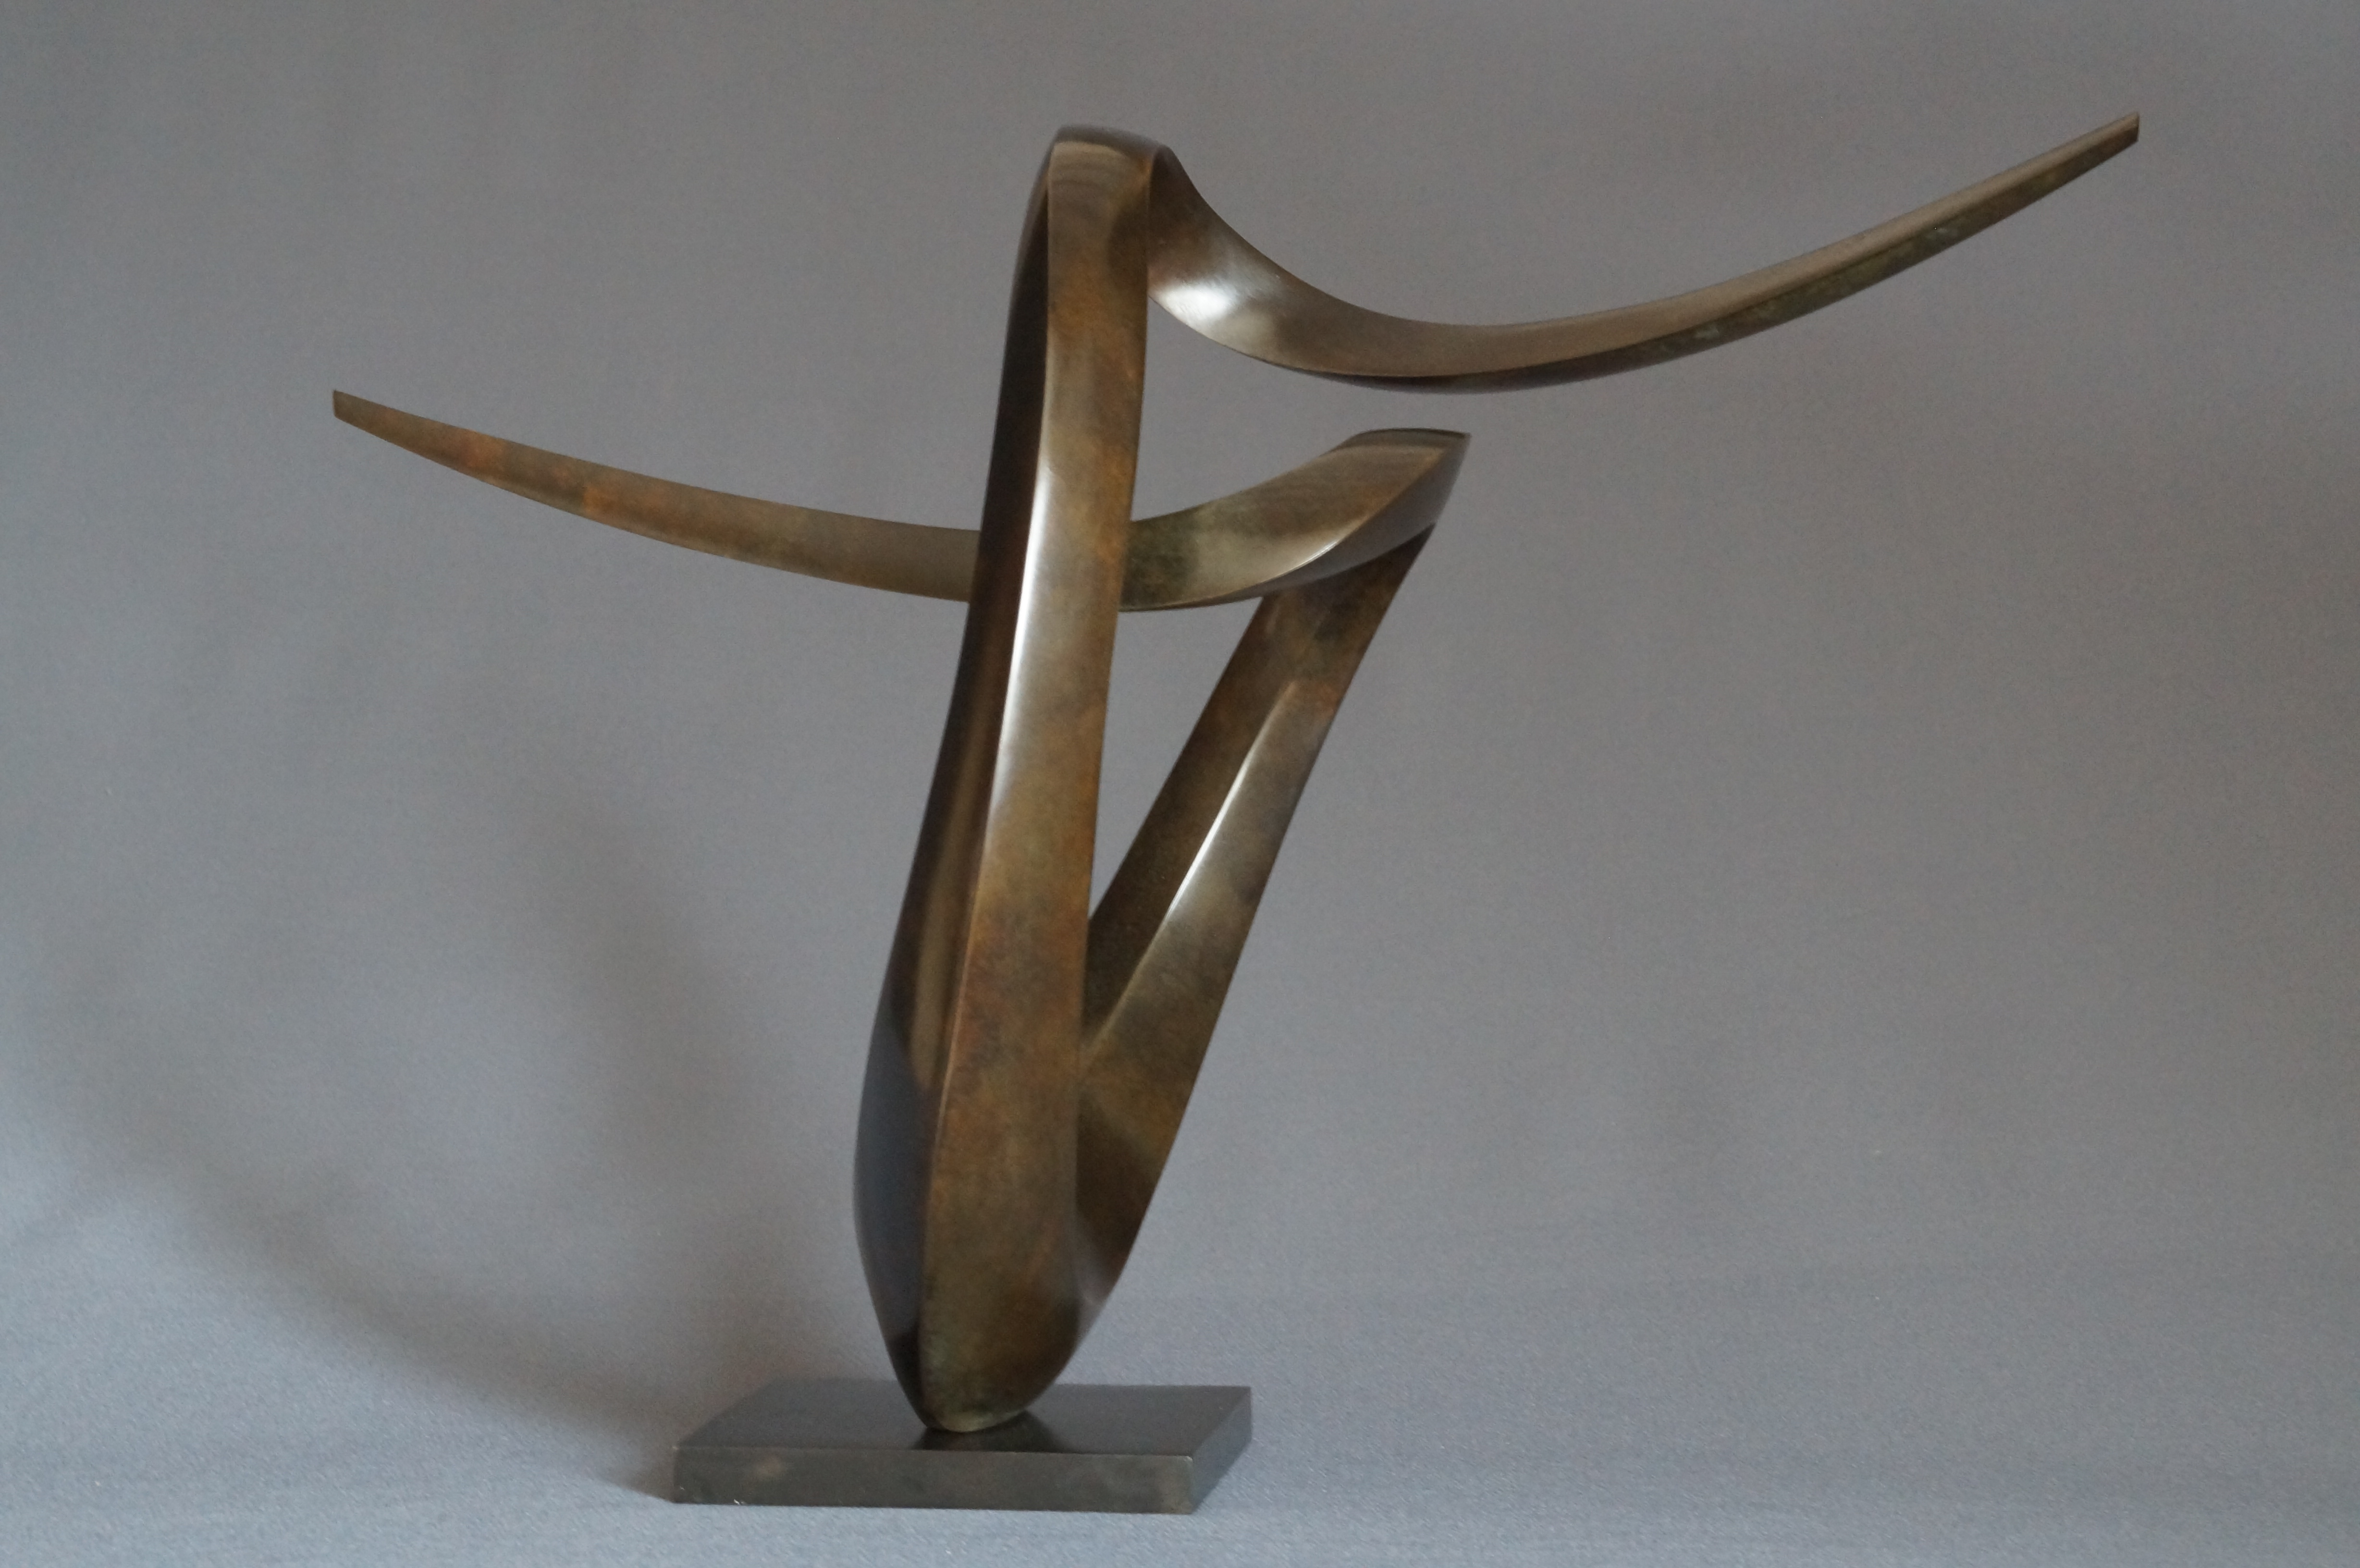 Magnifique sculpture de l'artiste sculpteur Edouard Hervé Plus Loin bronze original Patine marron abstrait Formes Géométriques Courbes Mouvement à découvrir toute l'année à la Galerie Maner de Pont-Aven en Bretagne